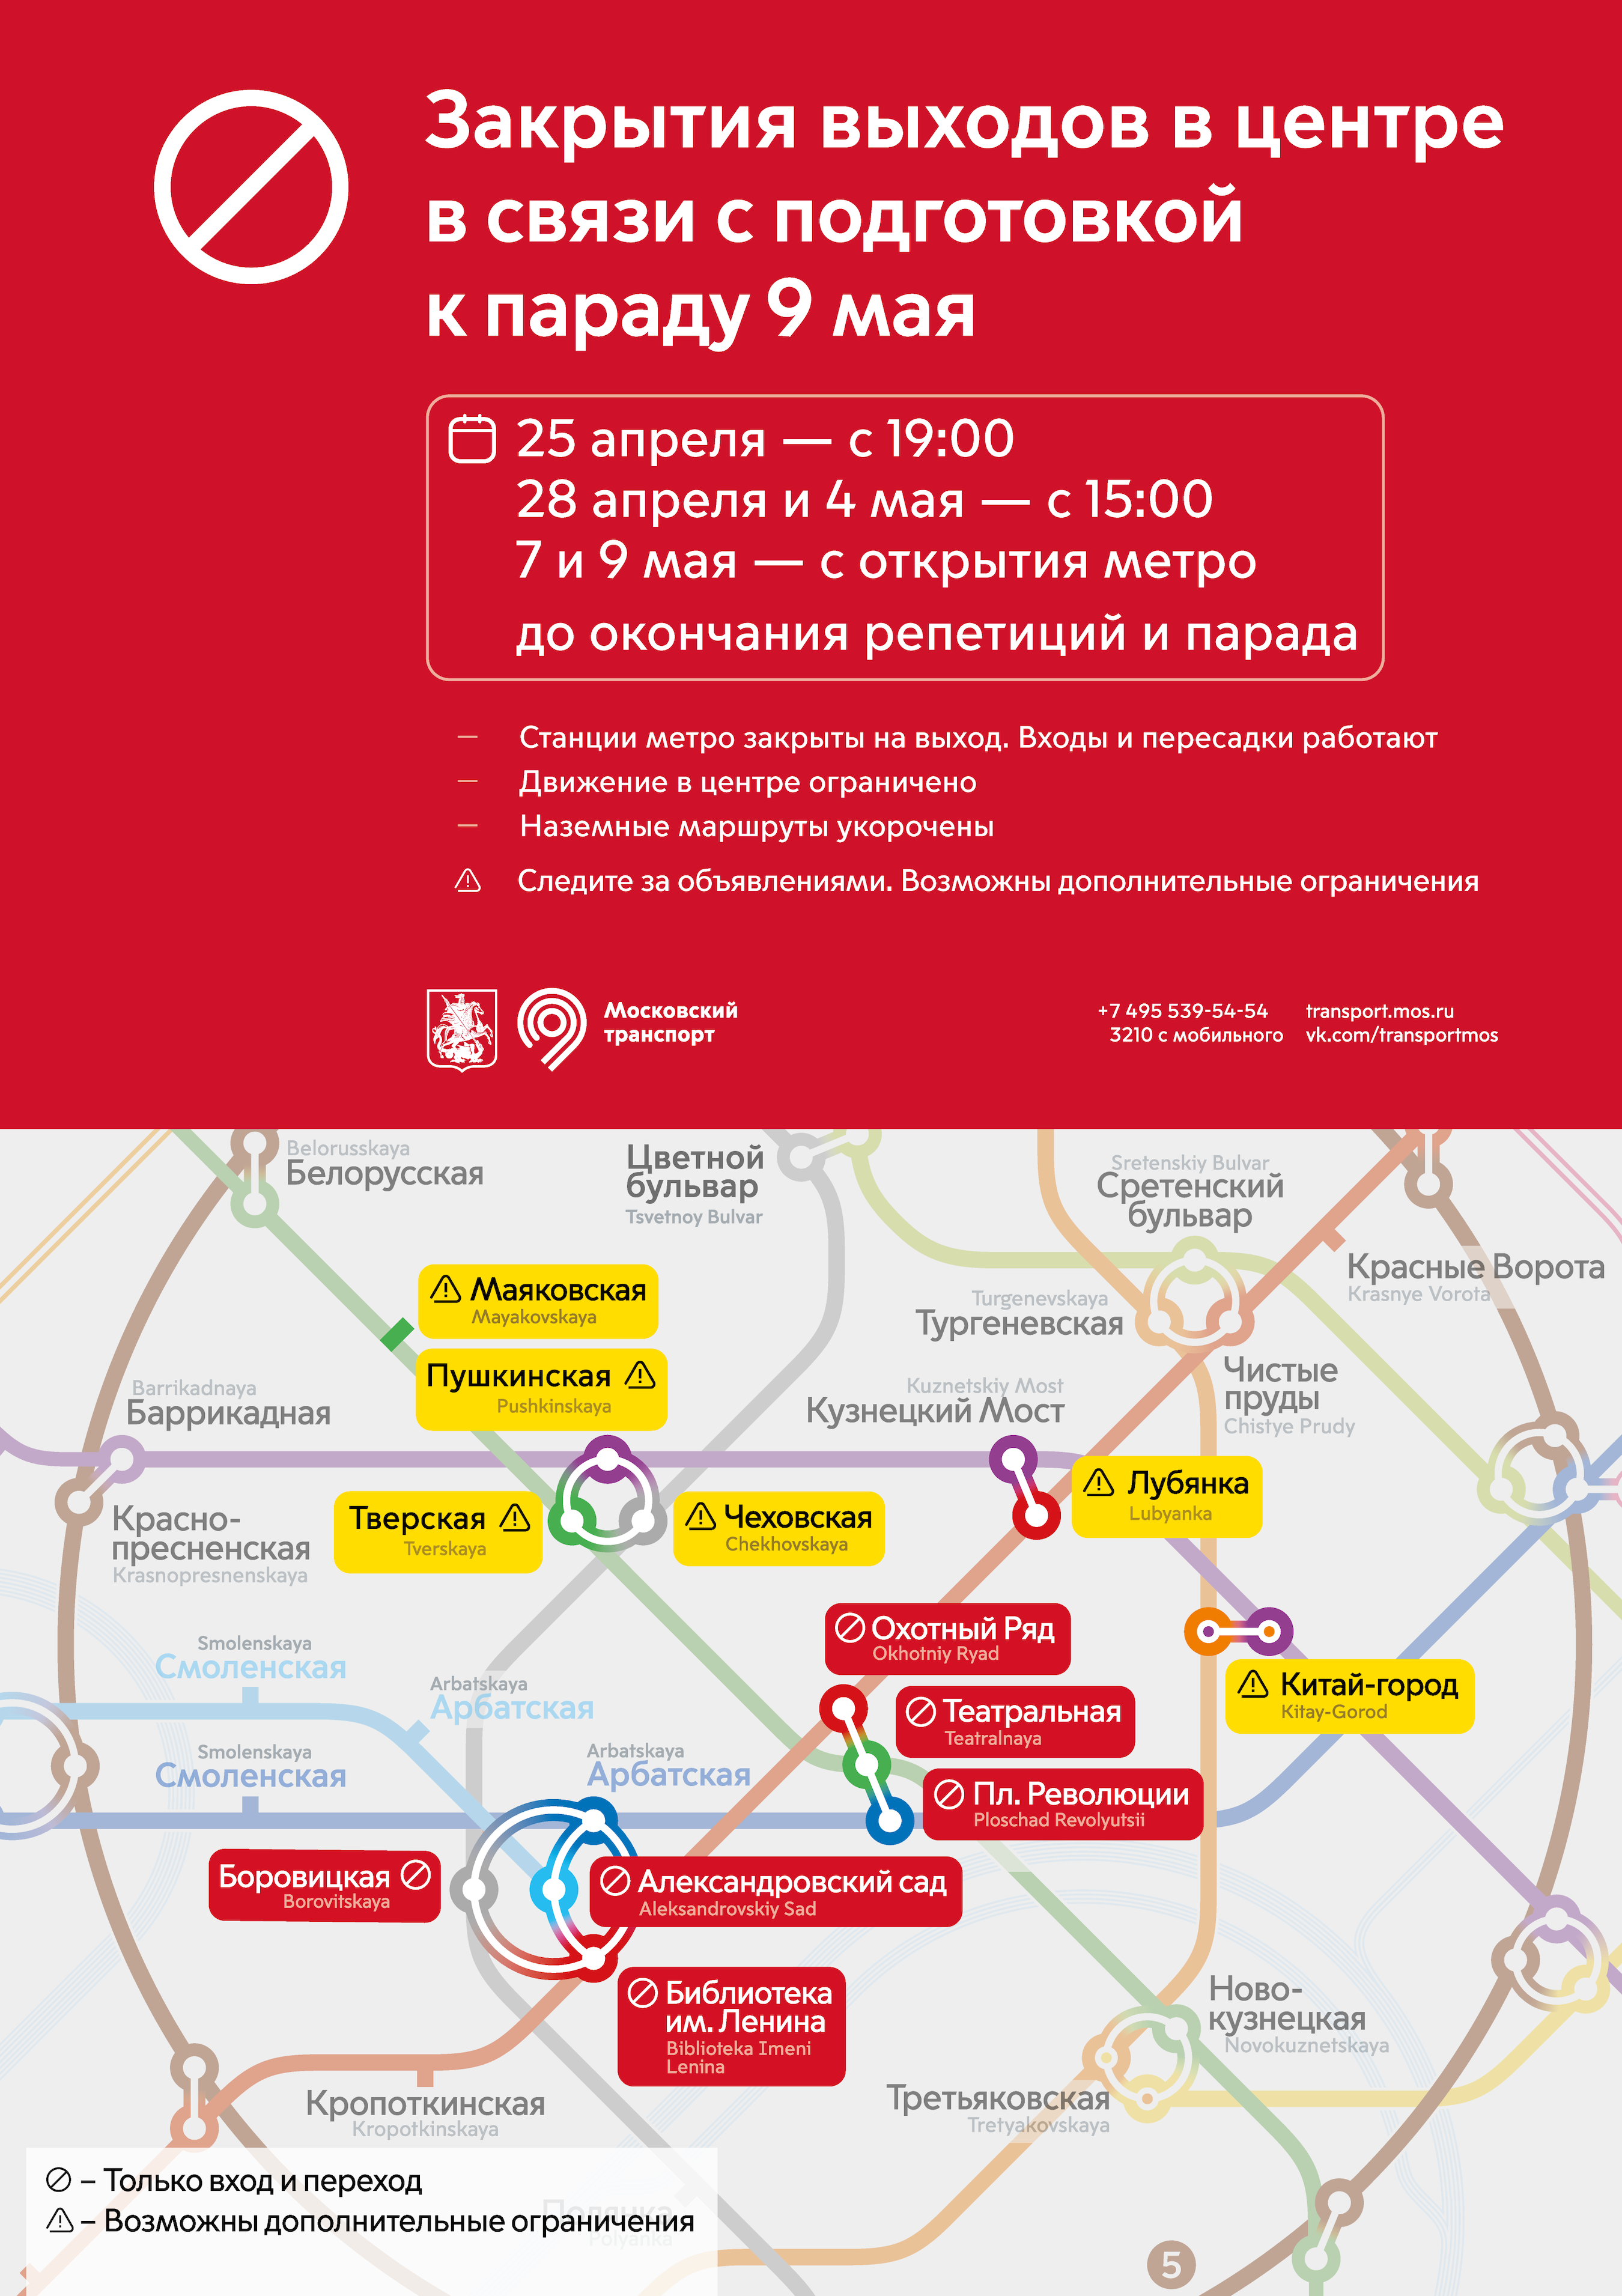 Cтанция метро «Боровицкая» на карте Москвы. Автобусы у станции метро. Схема зала и пересадки.